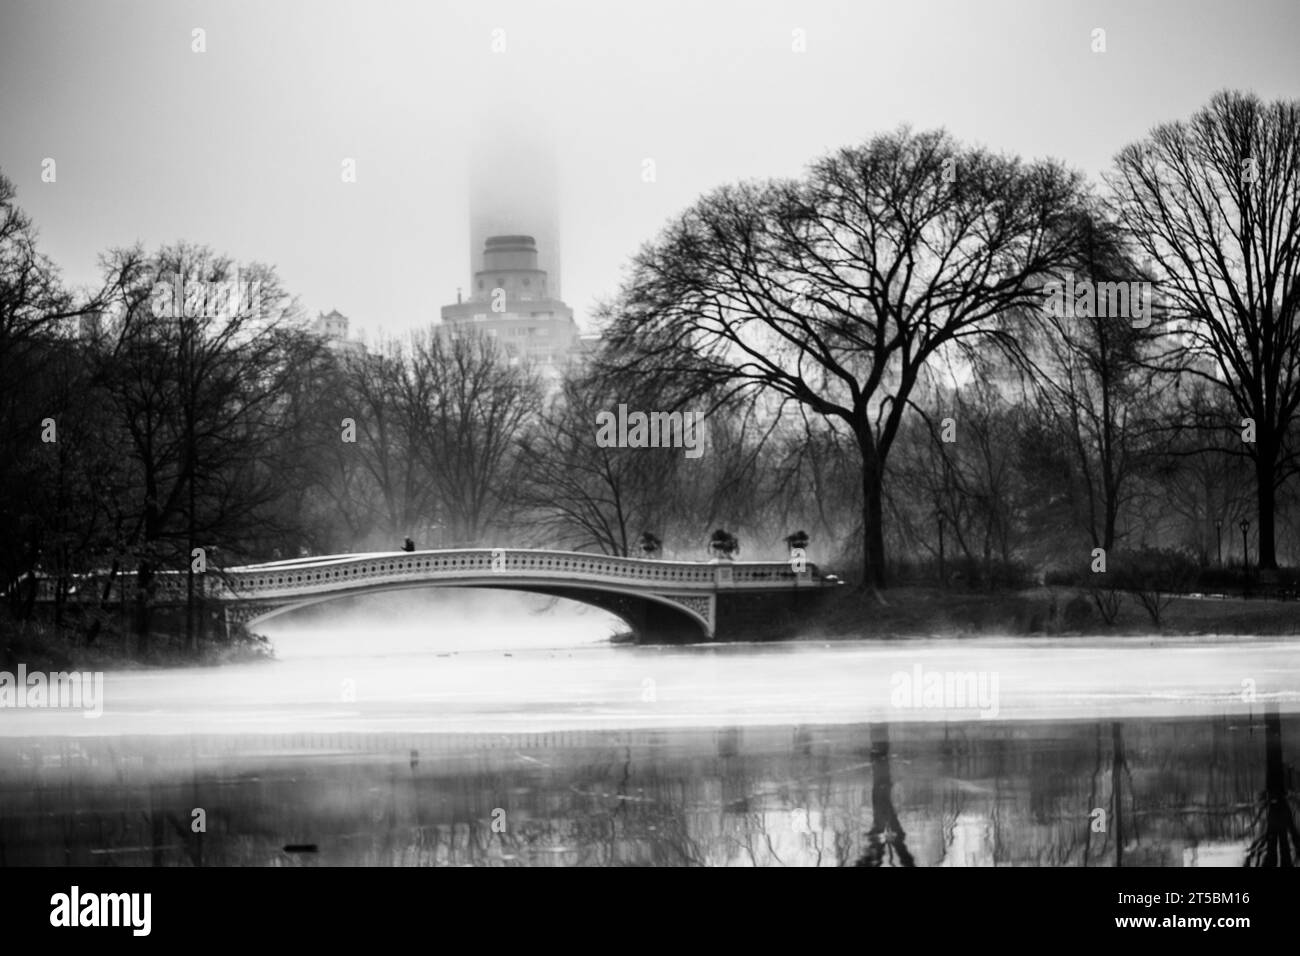 Ein hochwertiges Stockfoto der bezaubernden Bow Bridge, eines der berühmtesten Wahrzeichen des Central Parks. Das Foto zeigt das elegante Gusseisen der Brücke Stockfoto